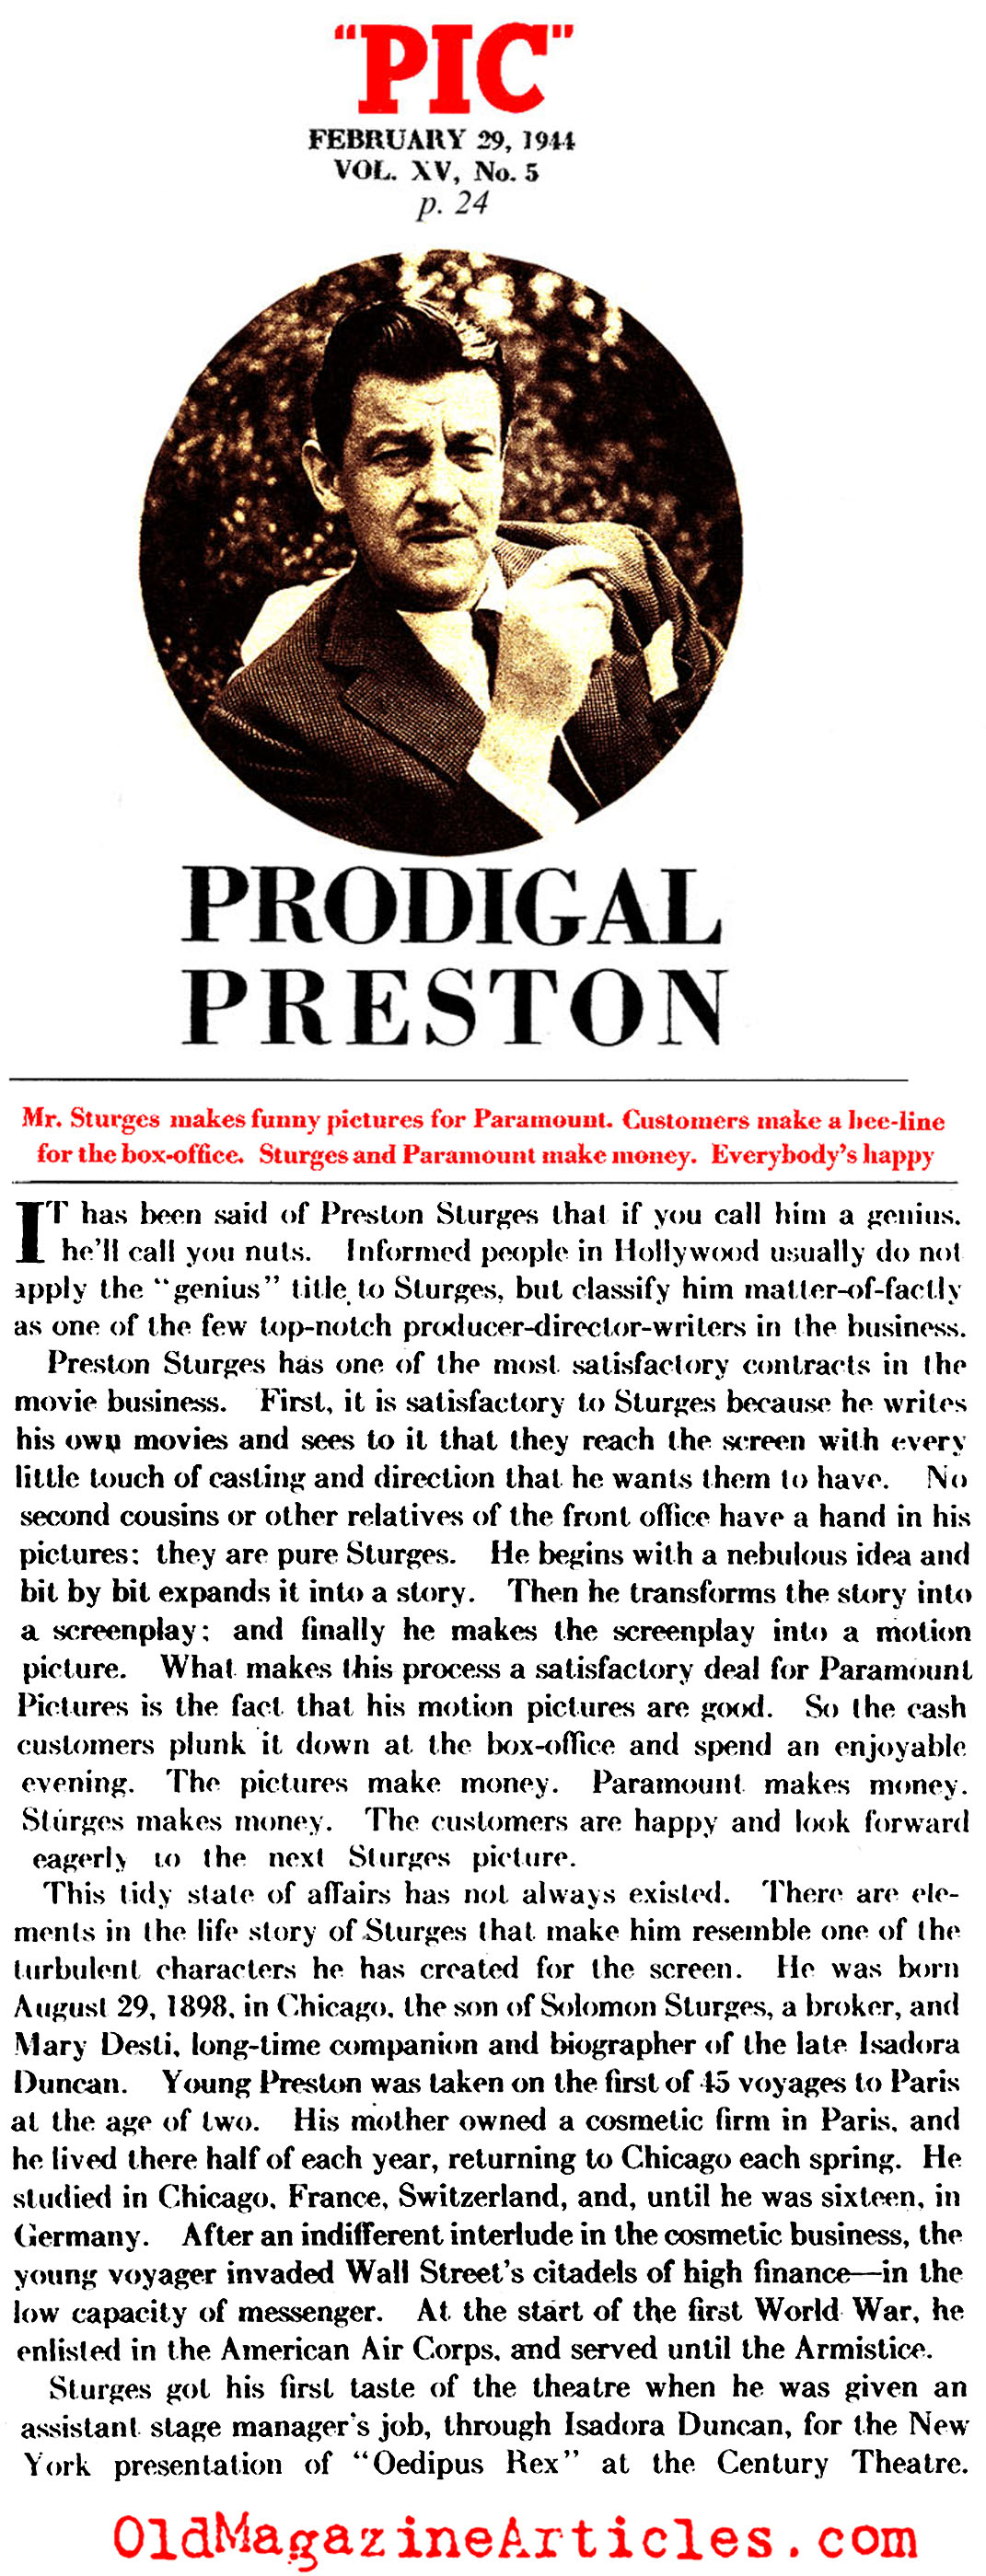 Preston Sturgis, Director (Pic Magazine, 1944)